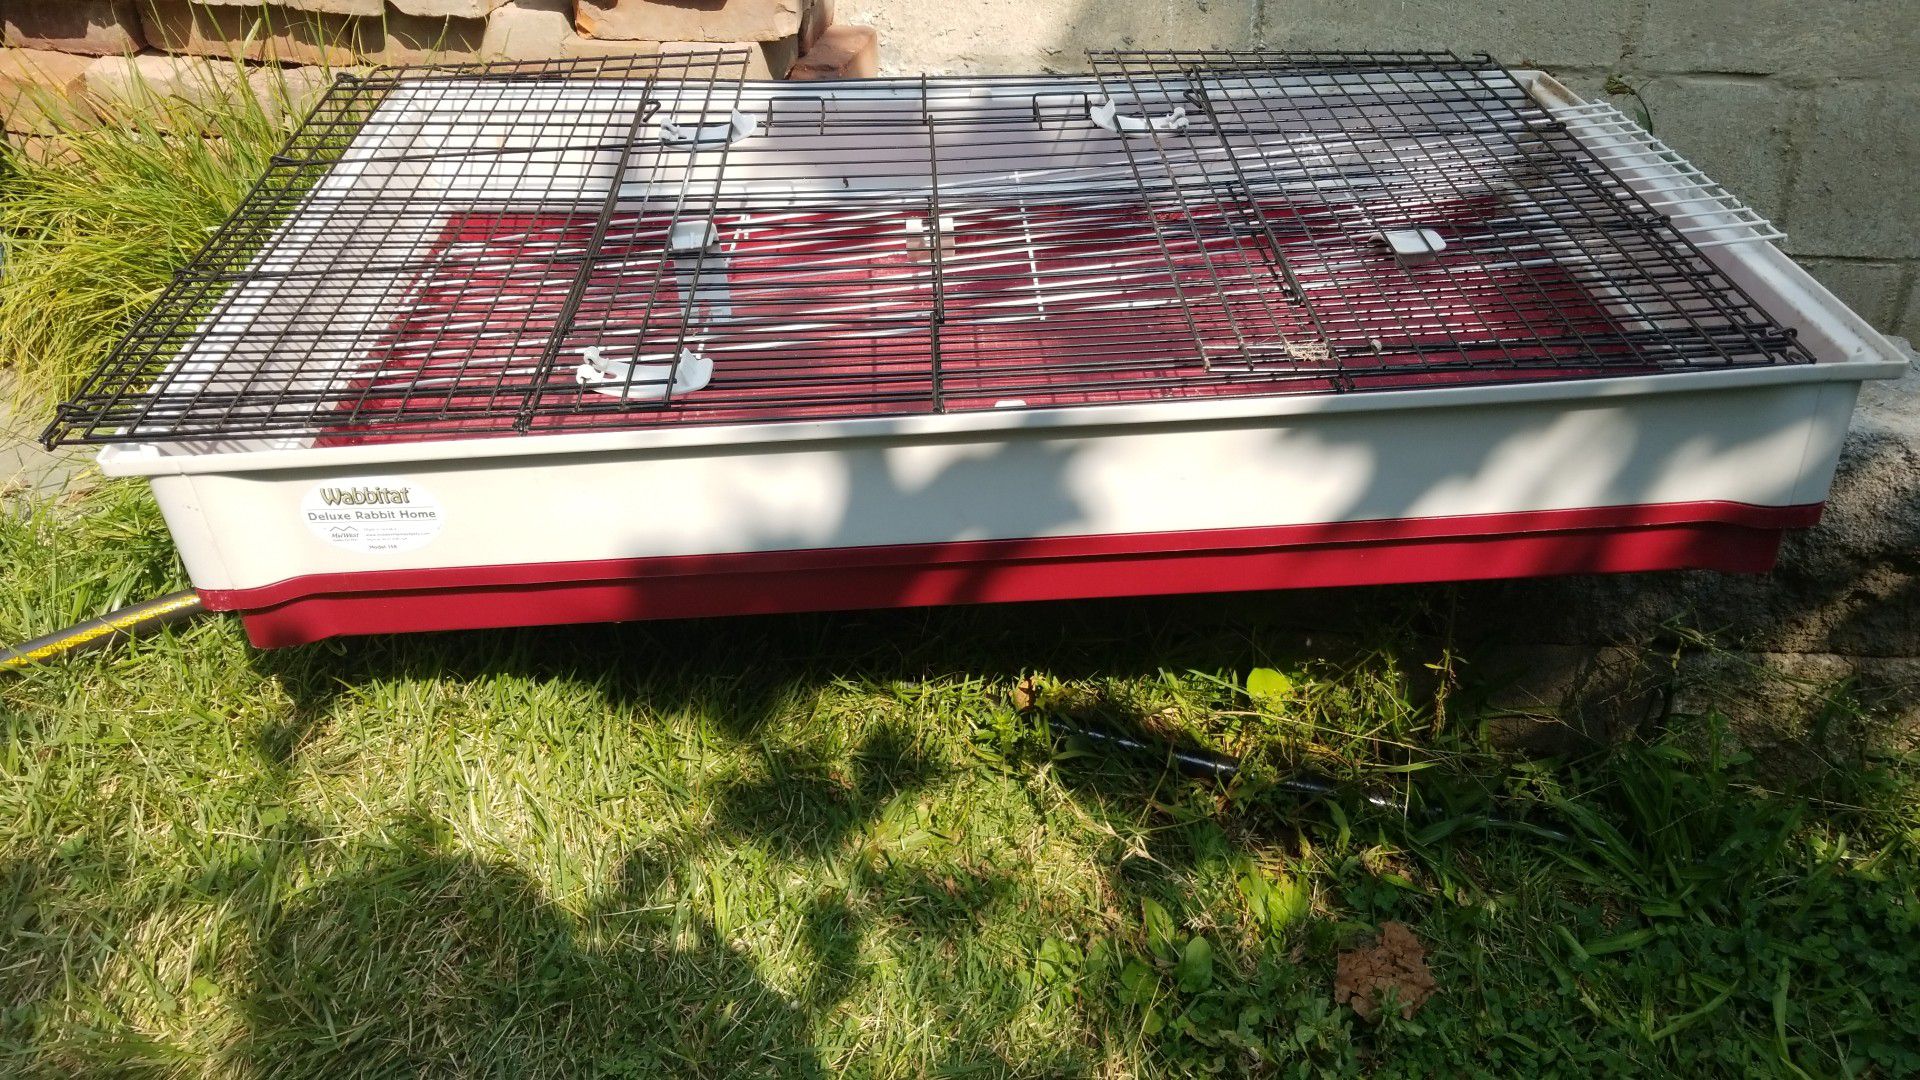 Wabbitat Rabbit/Guinea pig cage